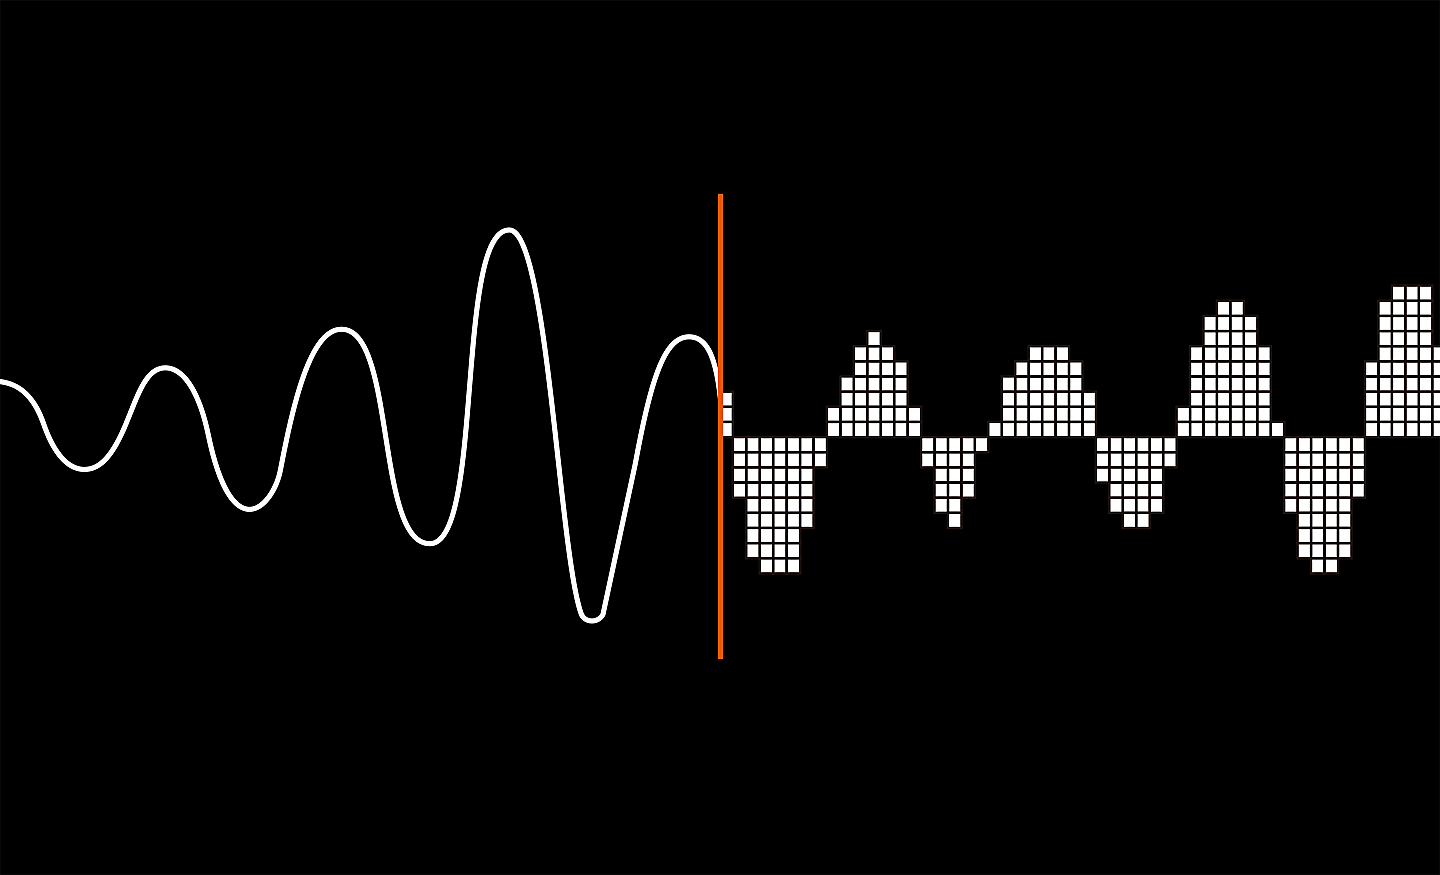 الرسوم التوضيحية التي تستخدم الموجات الصوتية لإظهار كيفية تحويل الصوت التناظري إلى صوت رقمي.